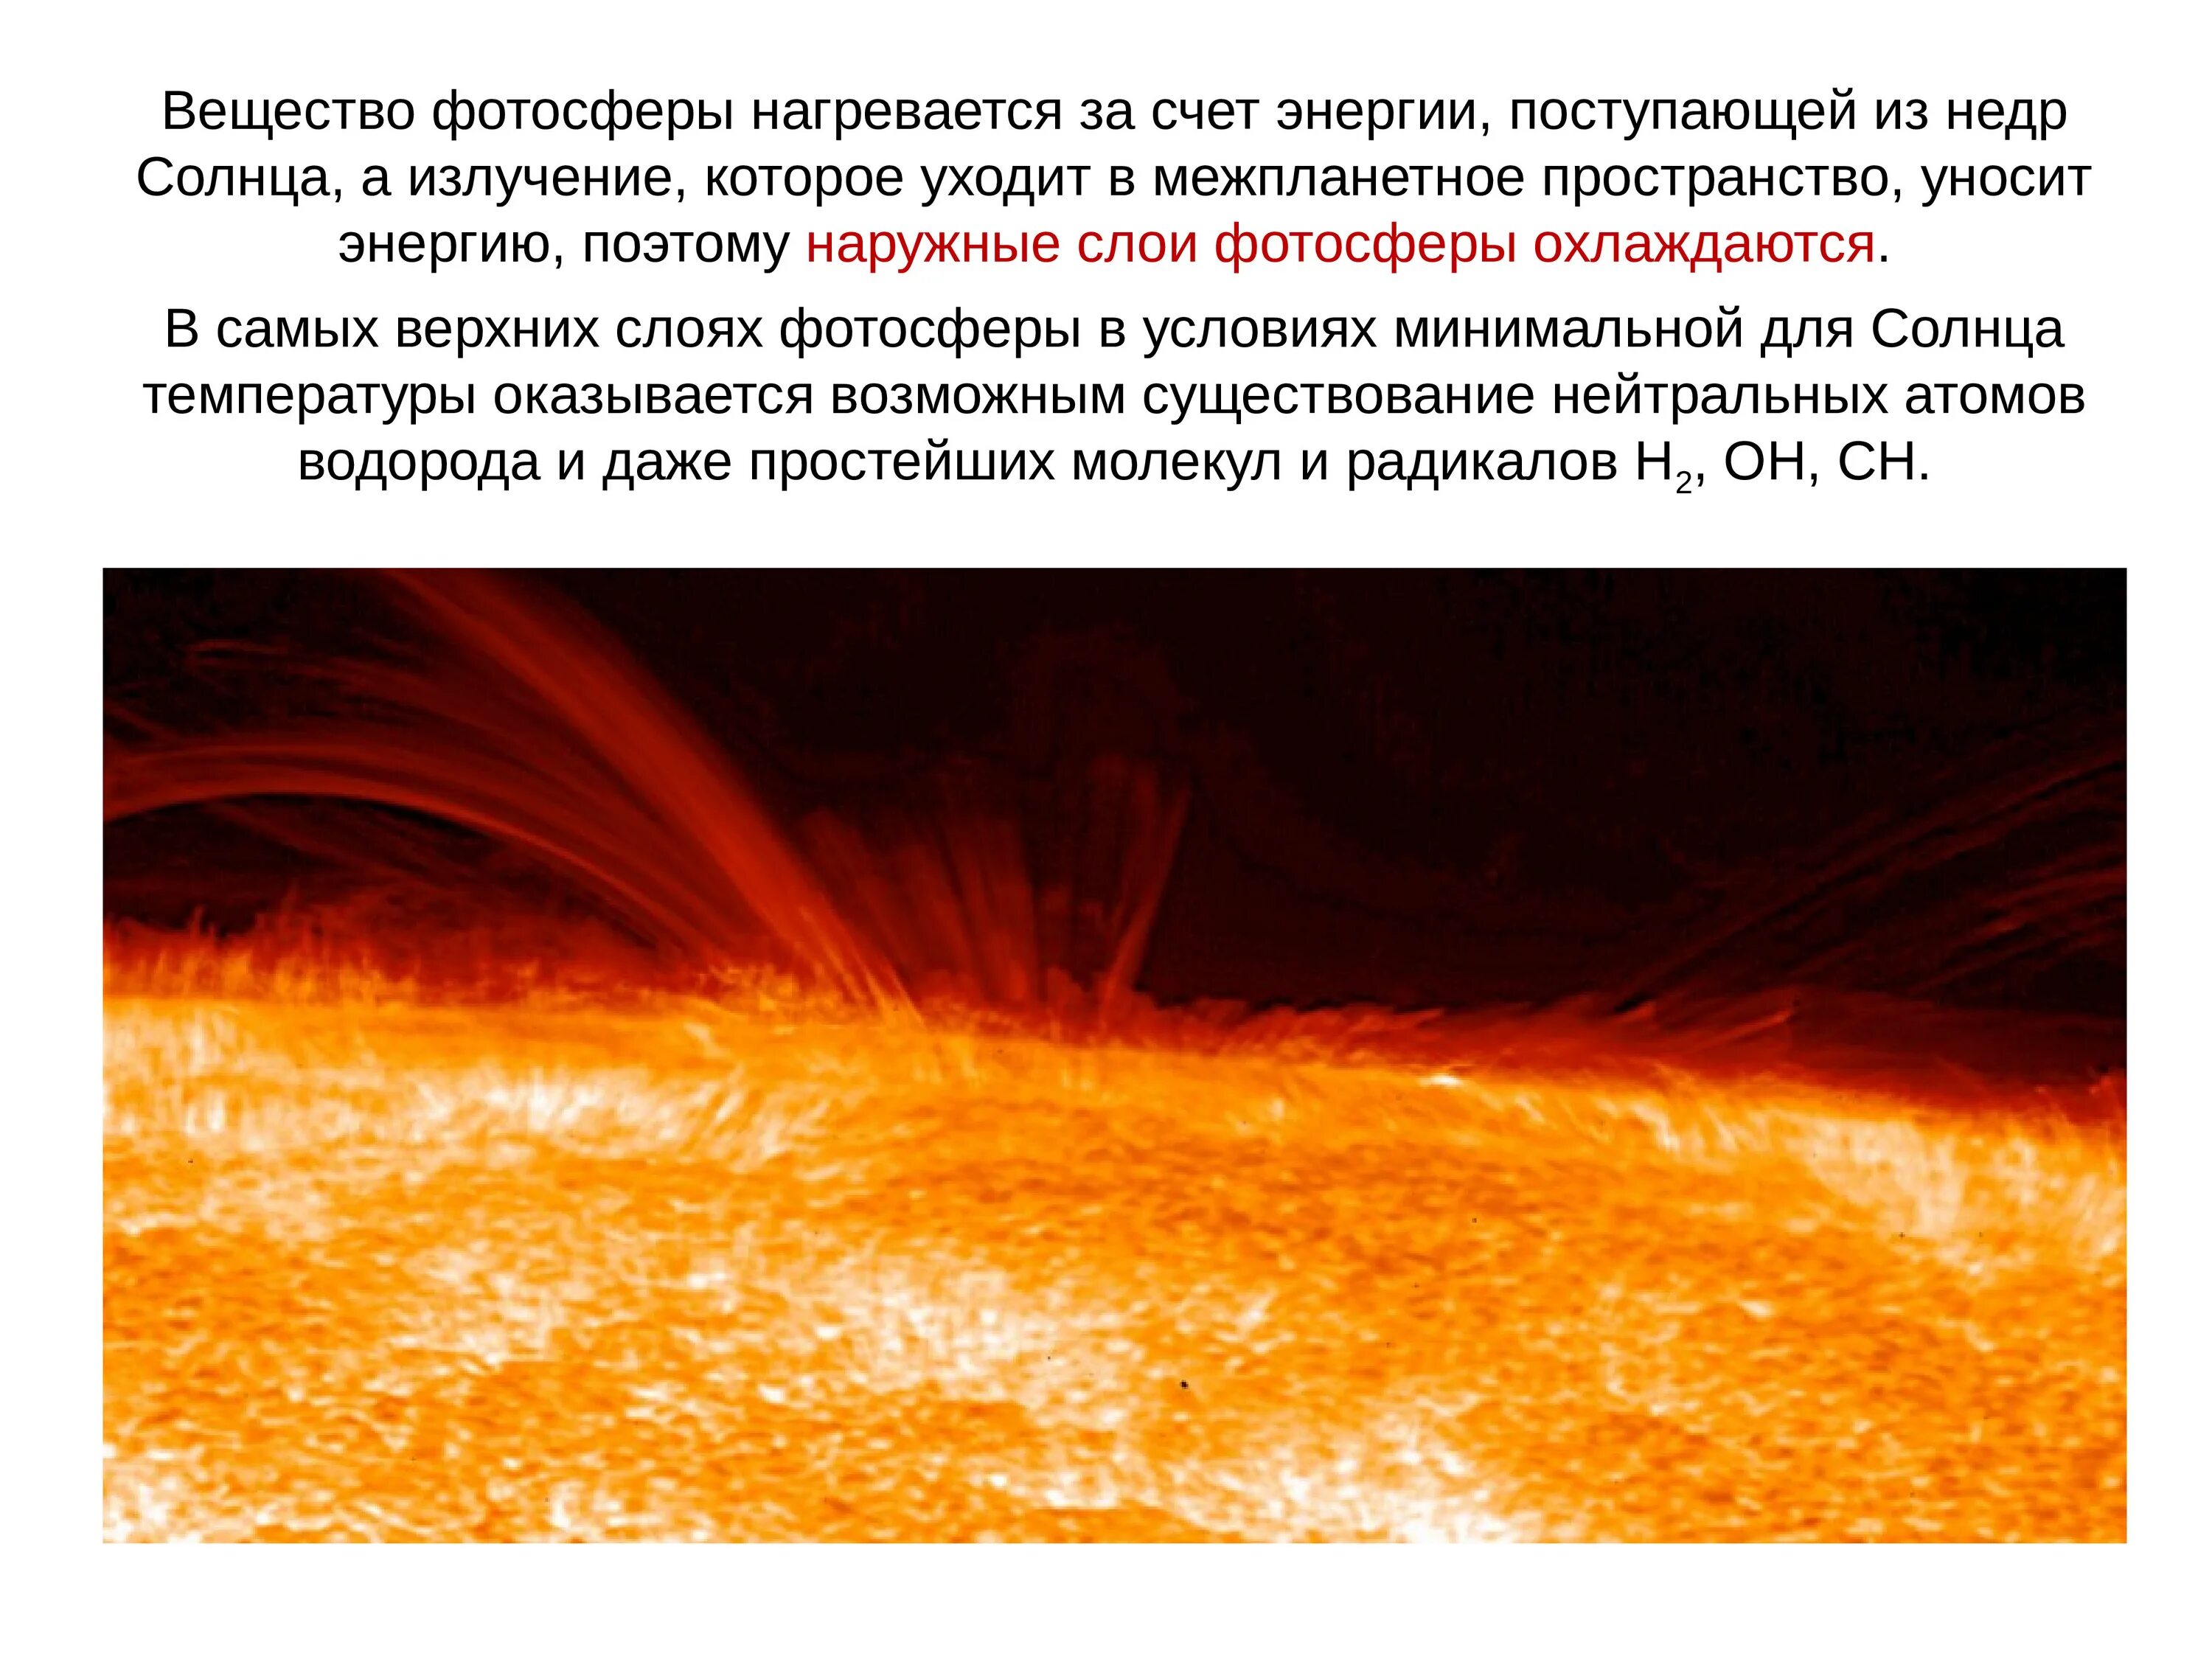 Фотосфера солнца. Атмосфера солнца. Слои солнца Фотосфера. Атмосфера солнца и Солнечная активность. Атмосфера солнца фотосфера